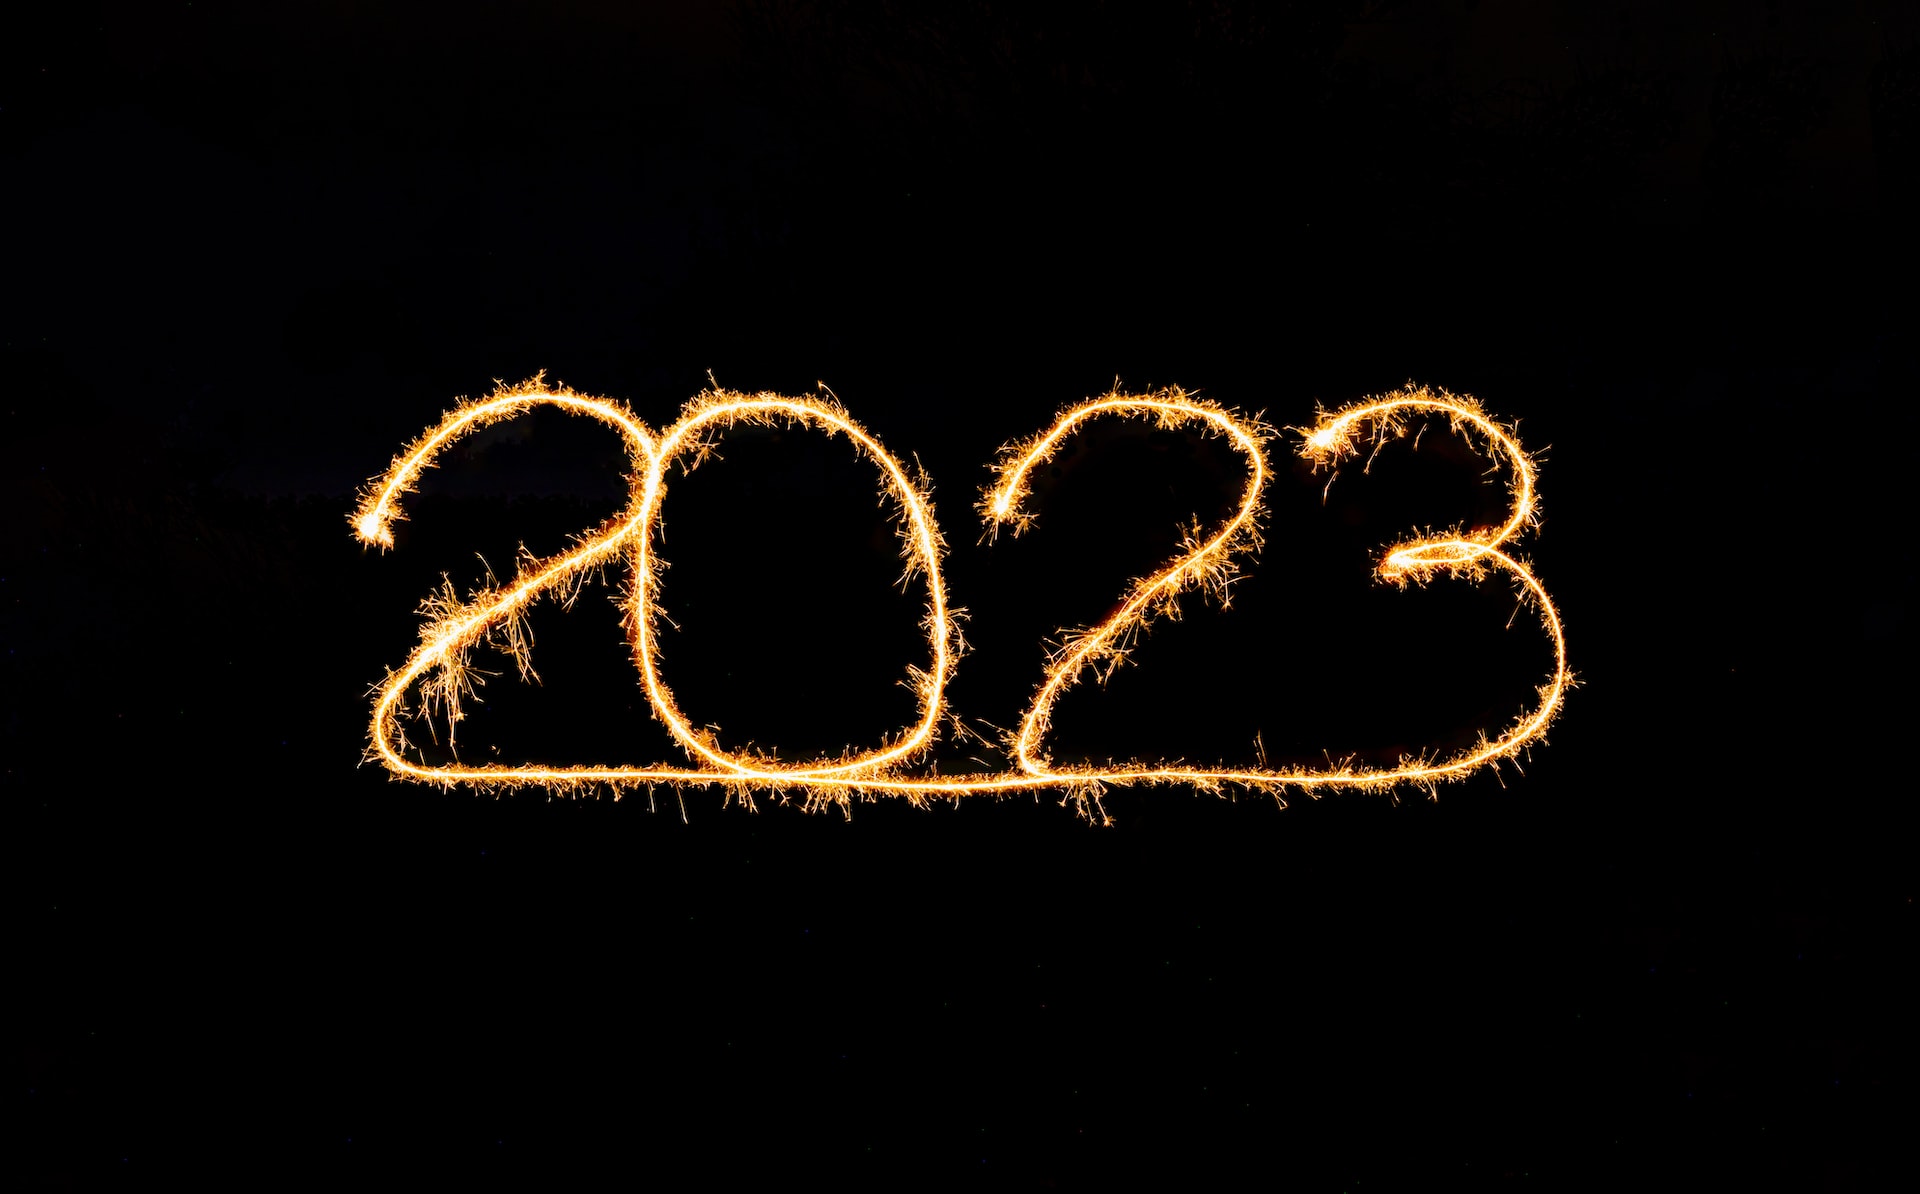 Tổng kết hoạt động năm 2022 - Chào mừng năm mới 2023 - tong ket 2022 chuc mung 2023 moritz knoringer rrw0mteqqou unsplash